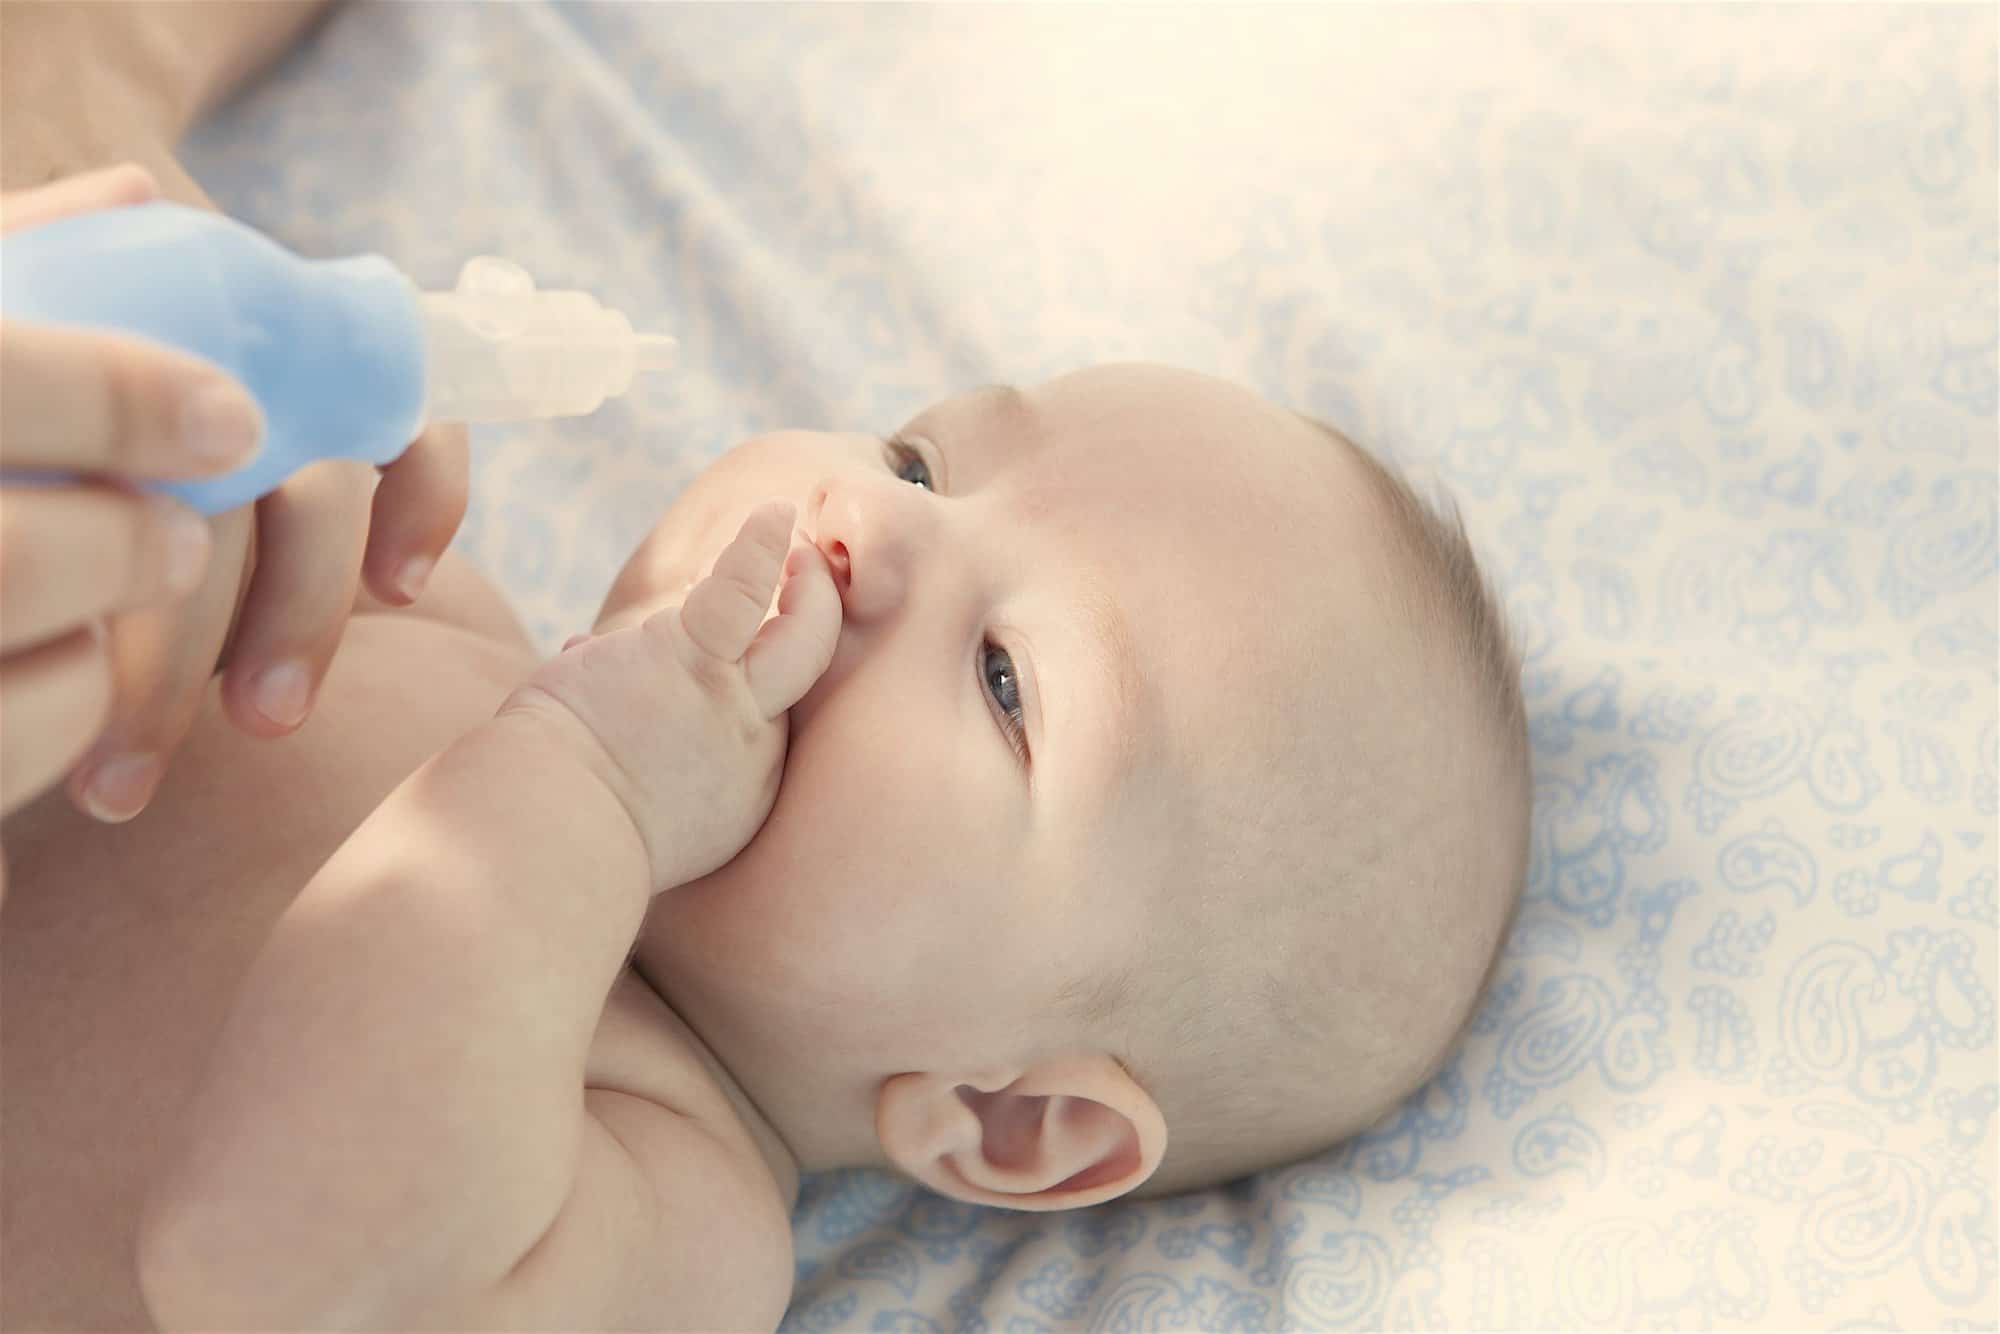 Cómo quitar los mocos del bebé: sí o no al aspirador nasal para